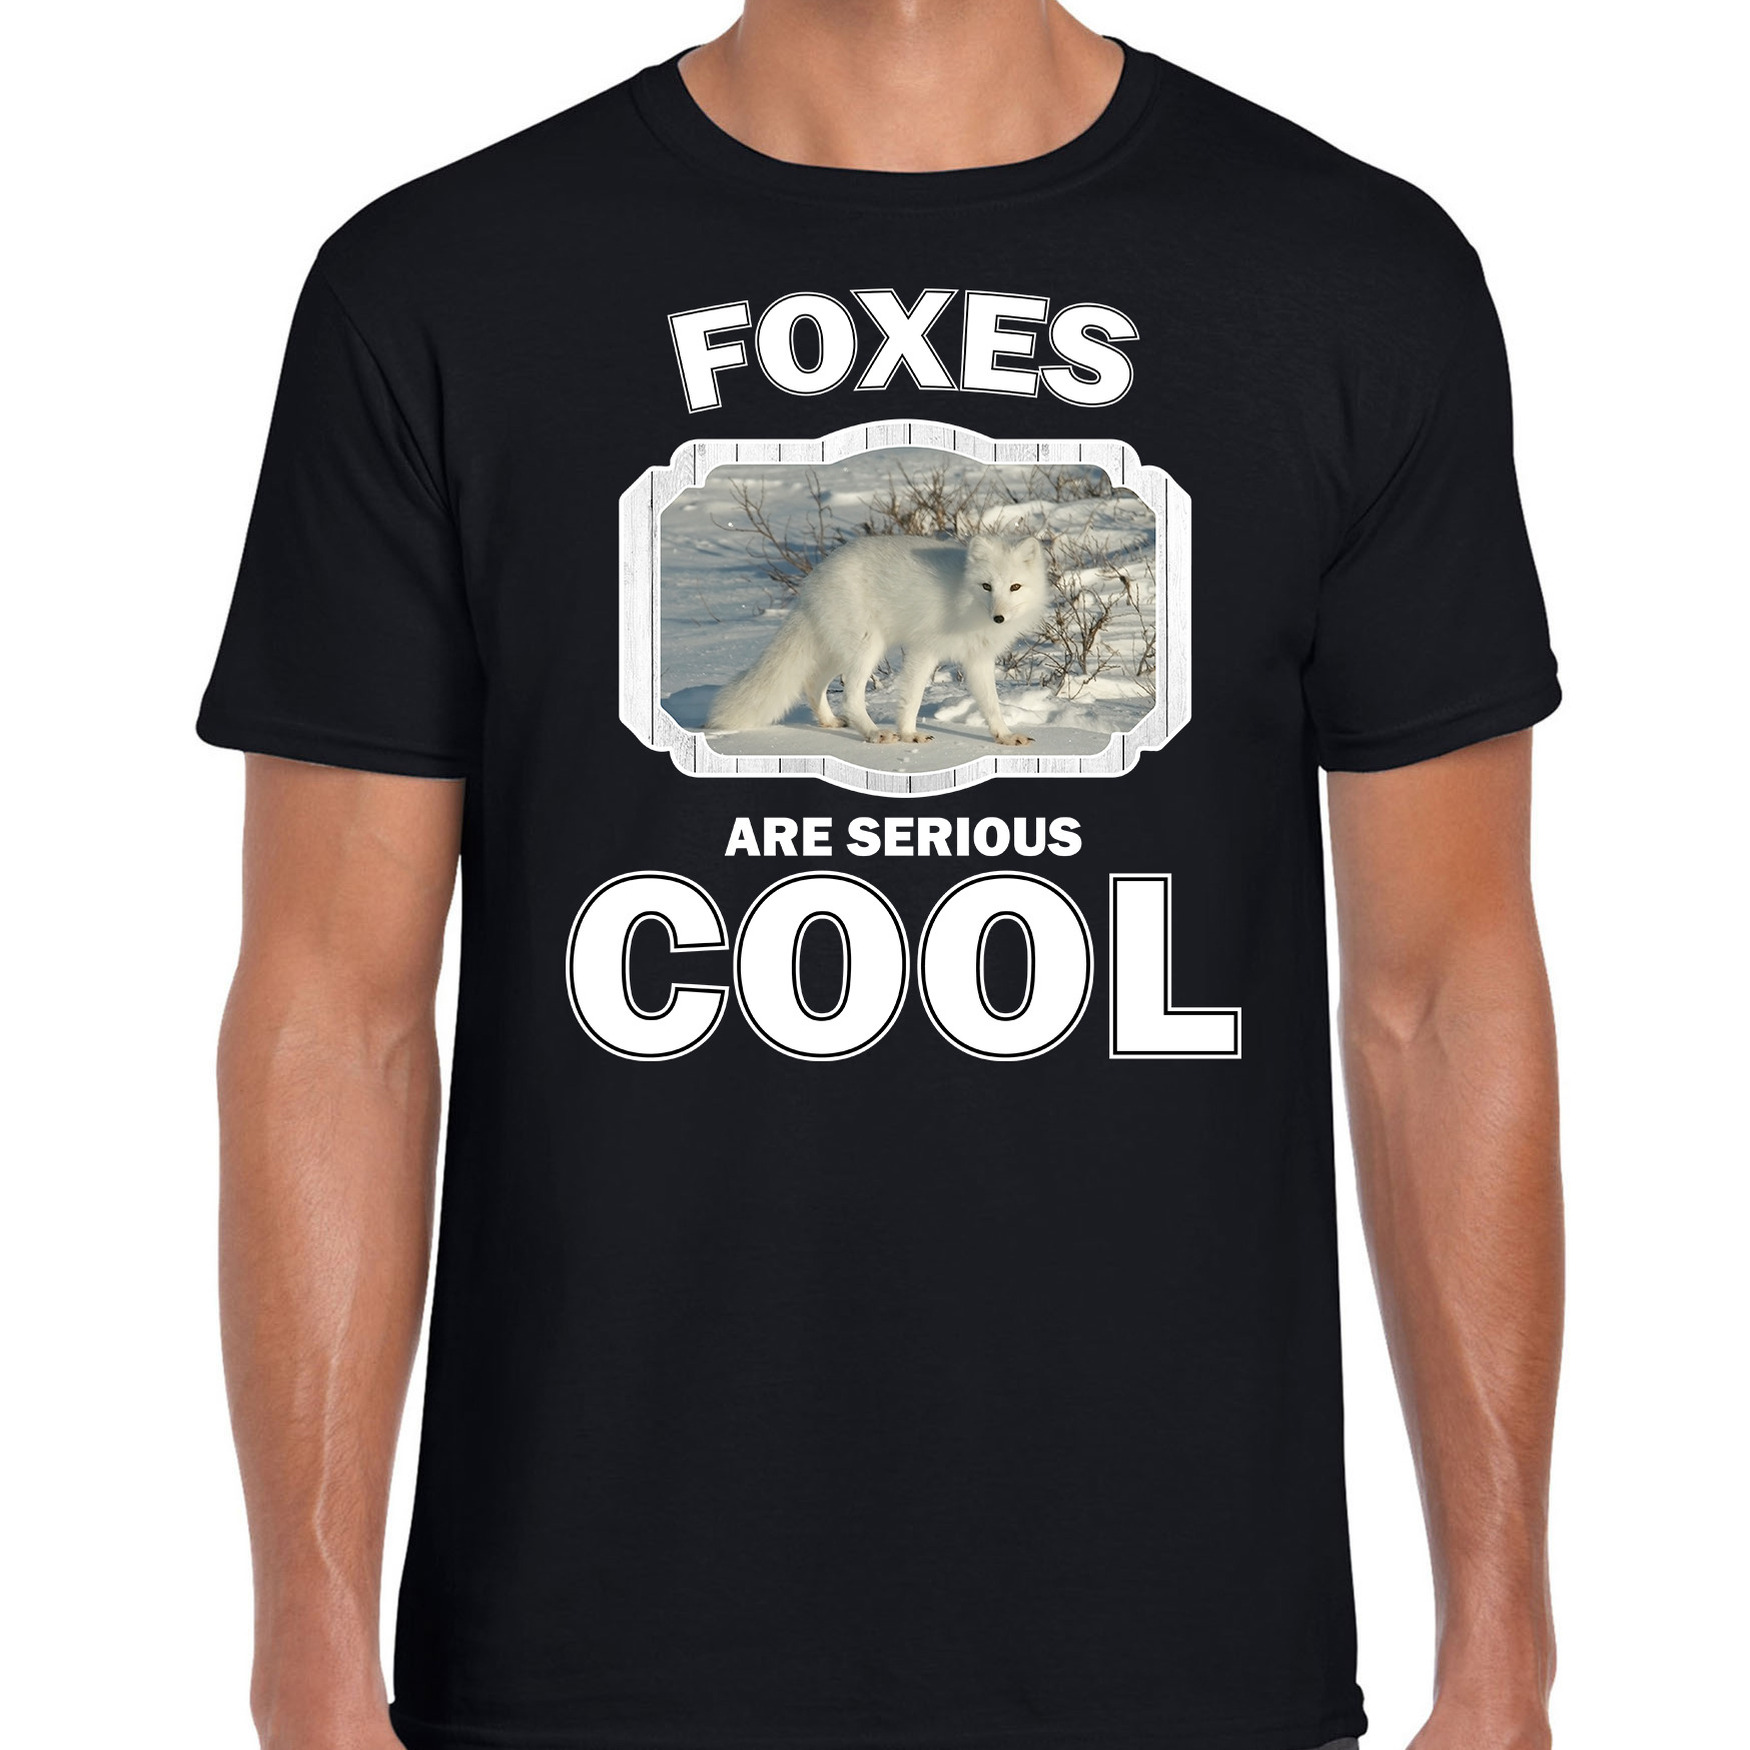 Dieren poolvos t-shirt zwart heren - foxes are cool shirt